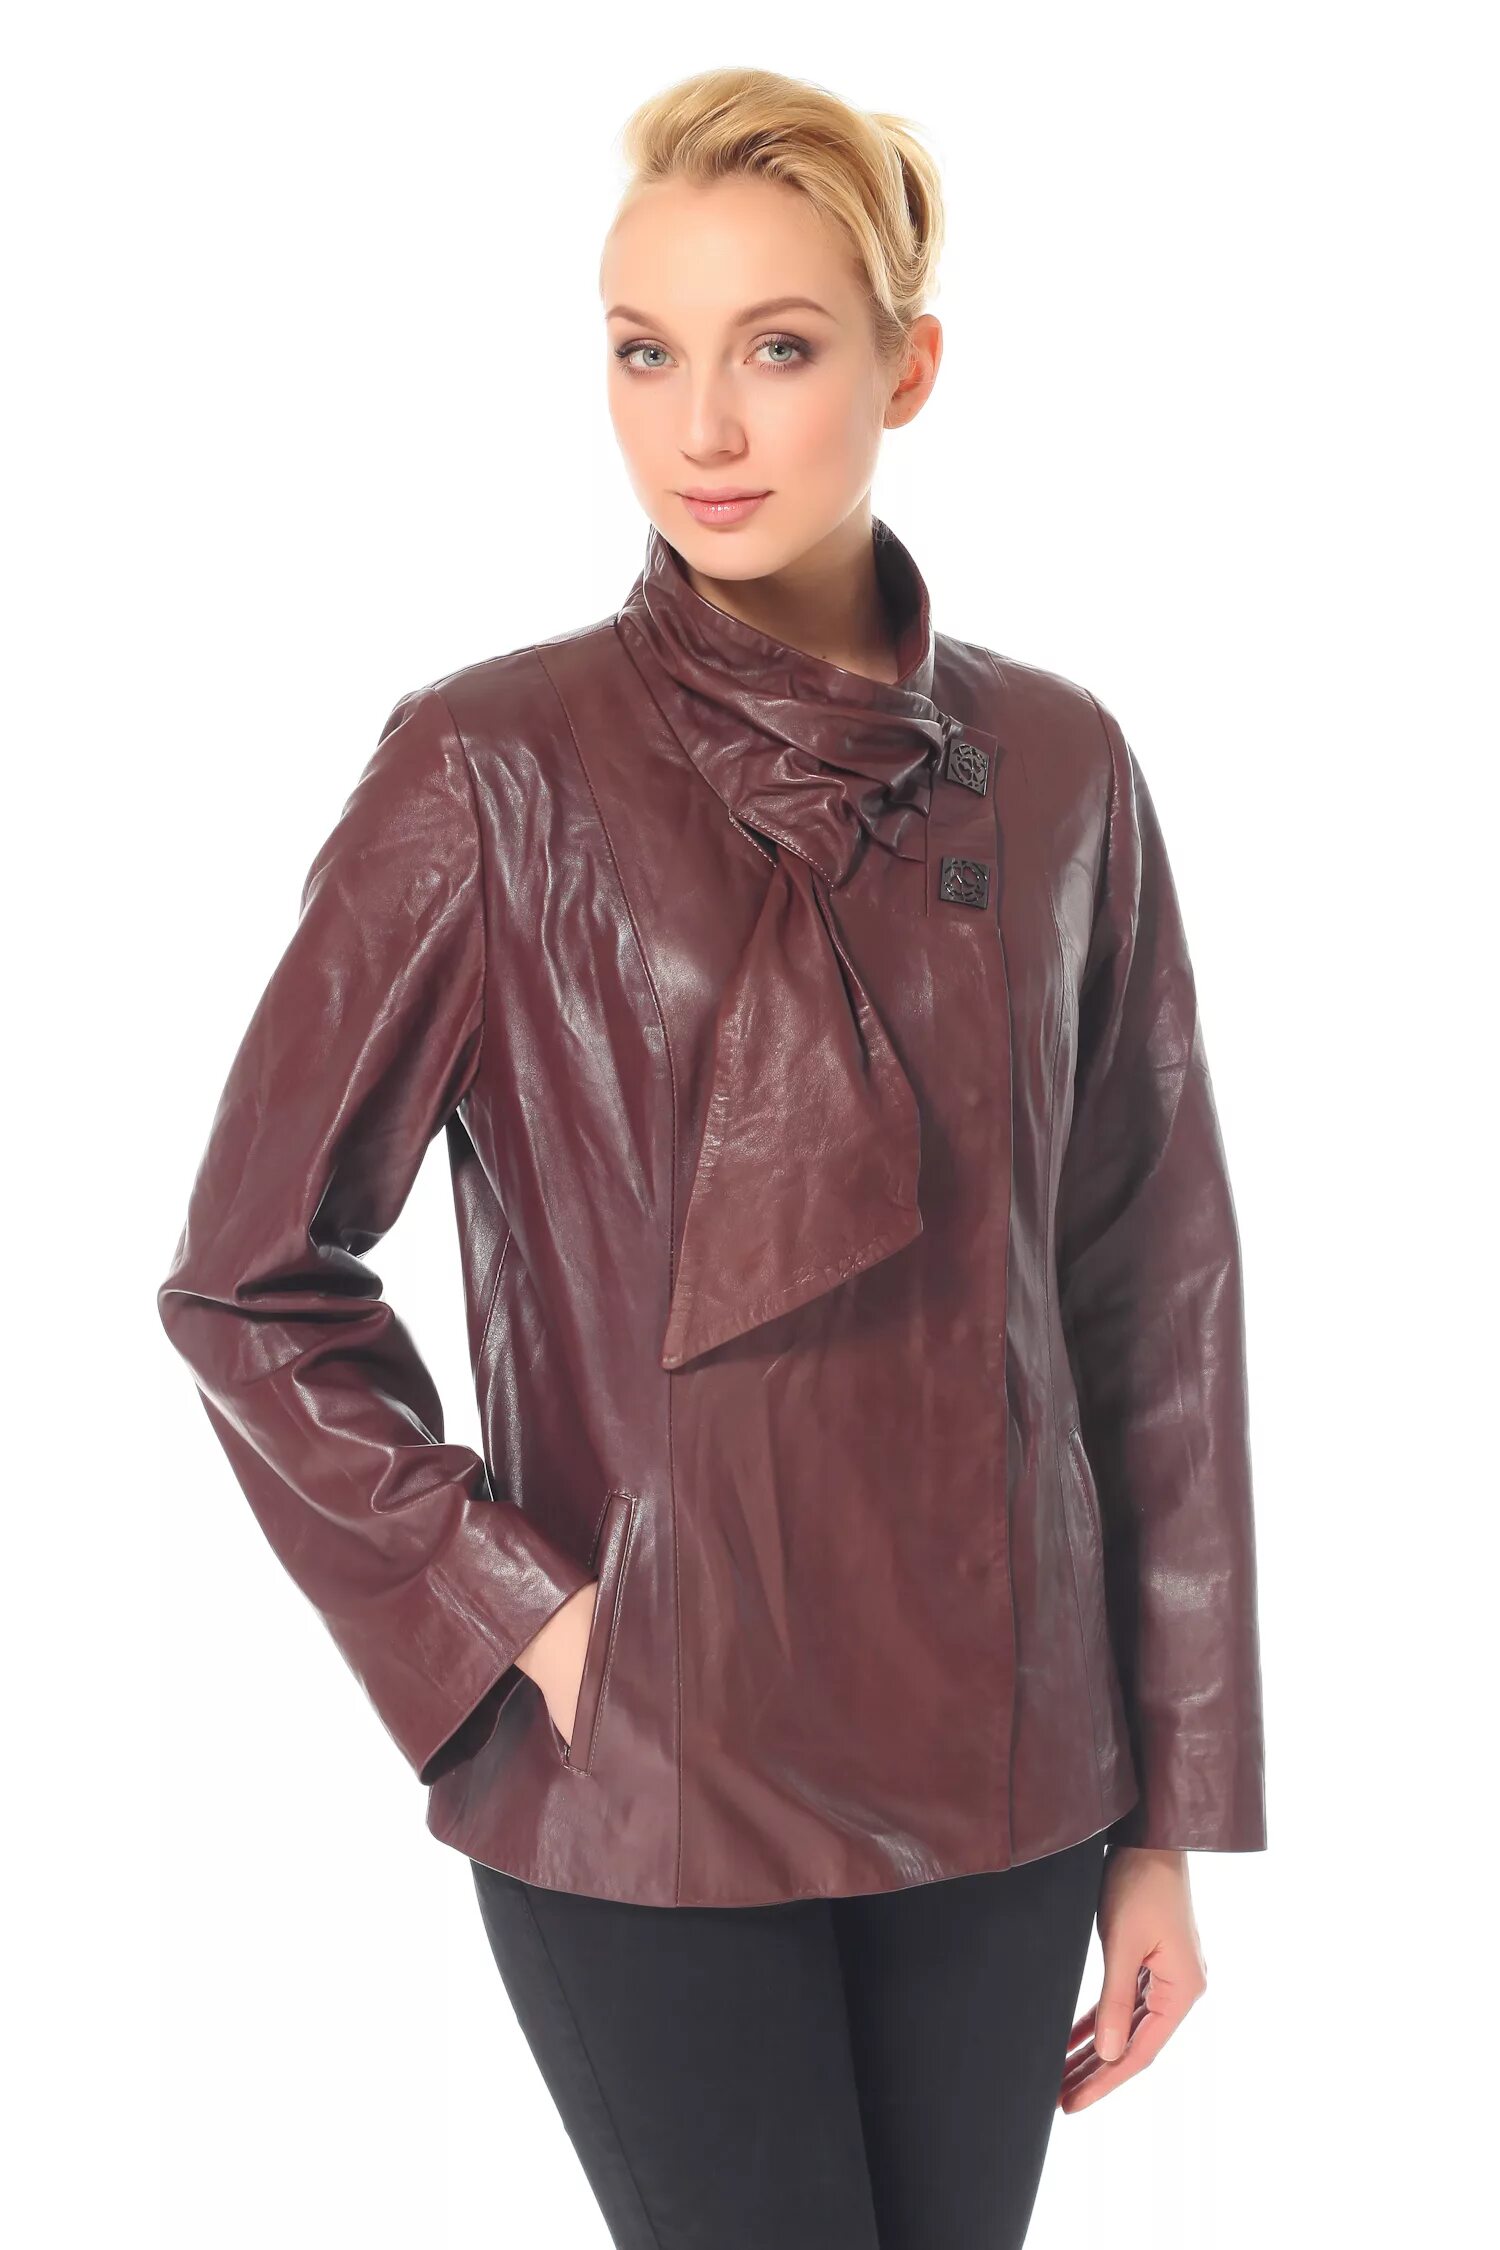 Натуральная кожаная куртка женская. Турецкие кожаные куртки женские. Кожаные куртки женские Турция. Косуха женская большого размера.